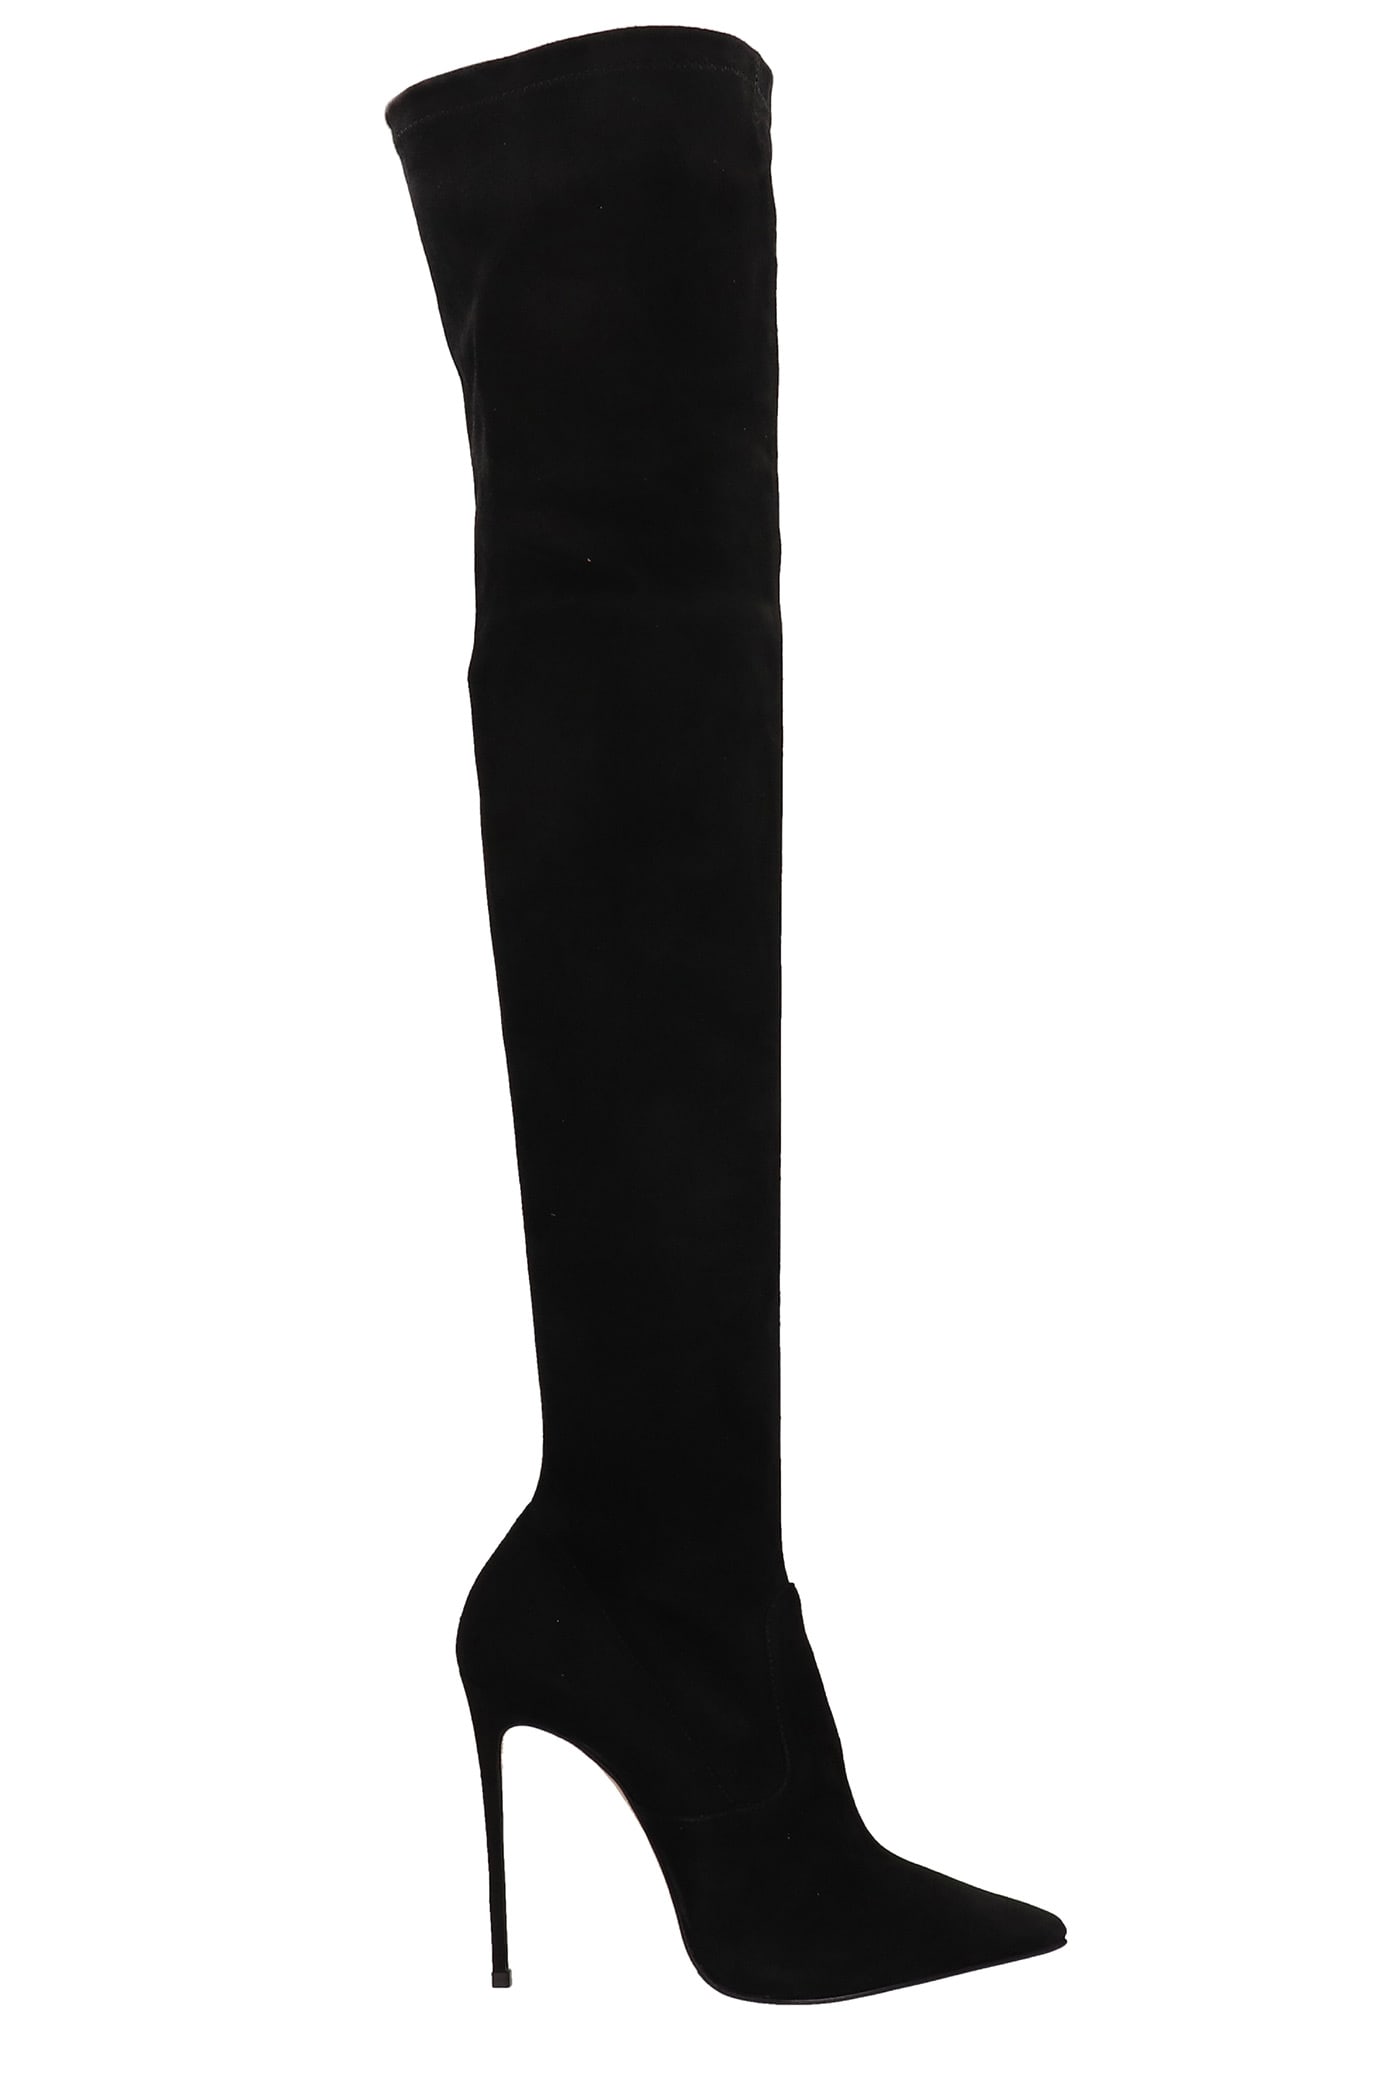 Le Silla Eva 120 High Heels Boots In Black Suede